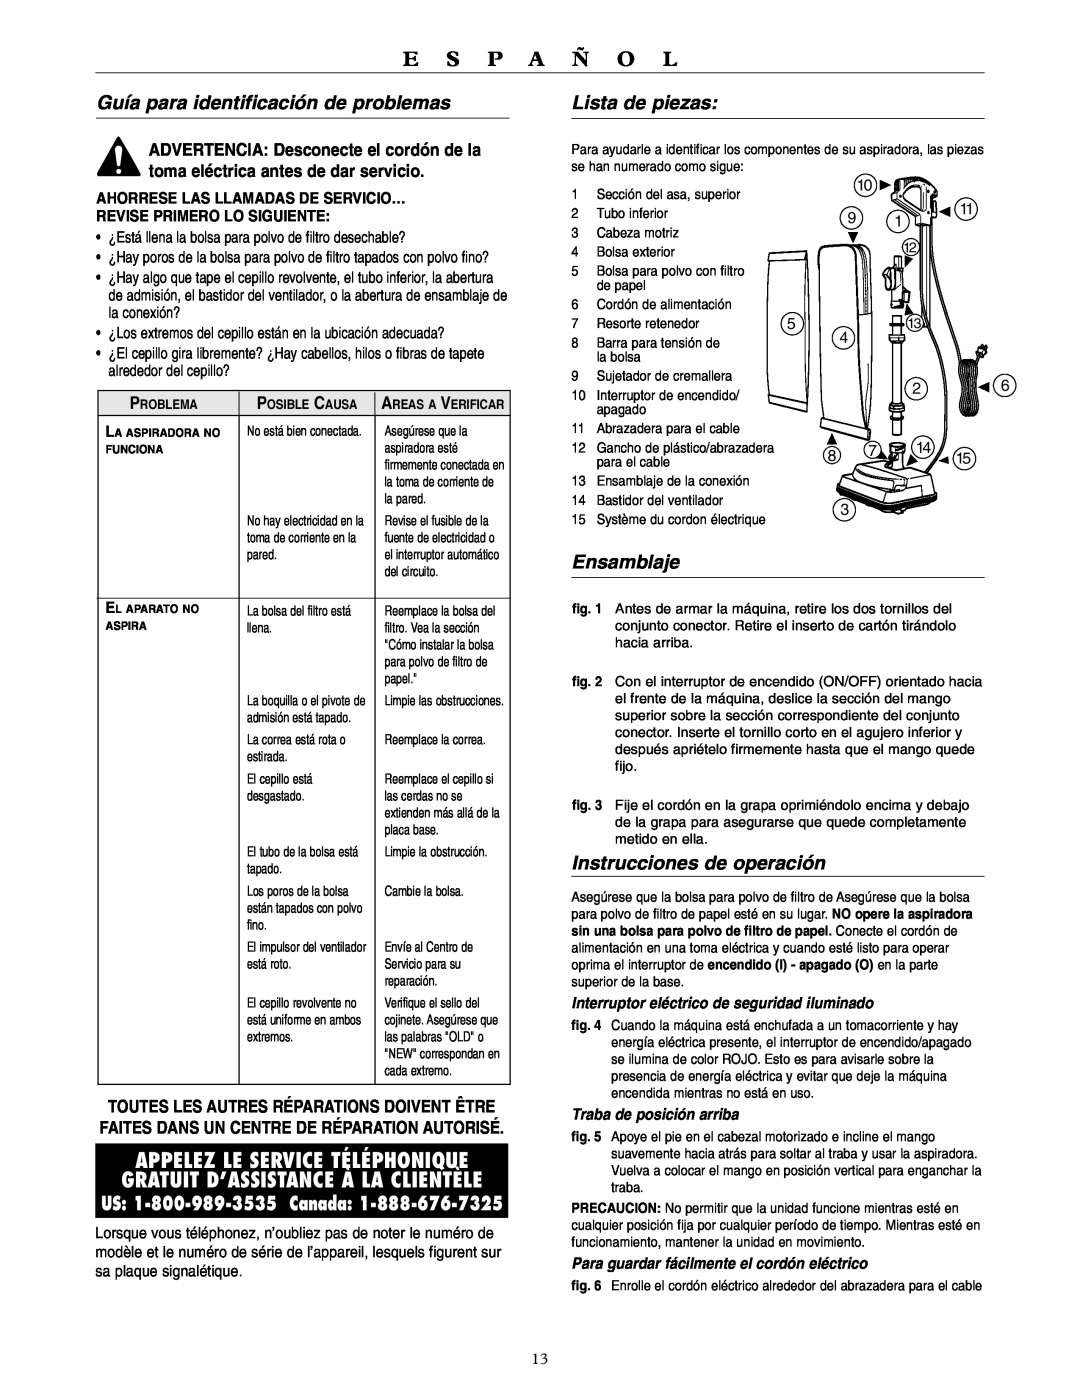 Oreck U3700HH warranty Guía para identificación de problemas, Lista de piezas, Ensamblaje, Instrucciones de operación 